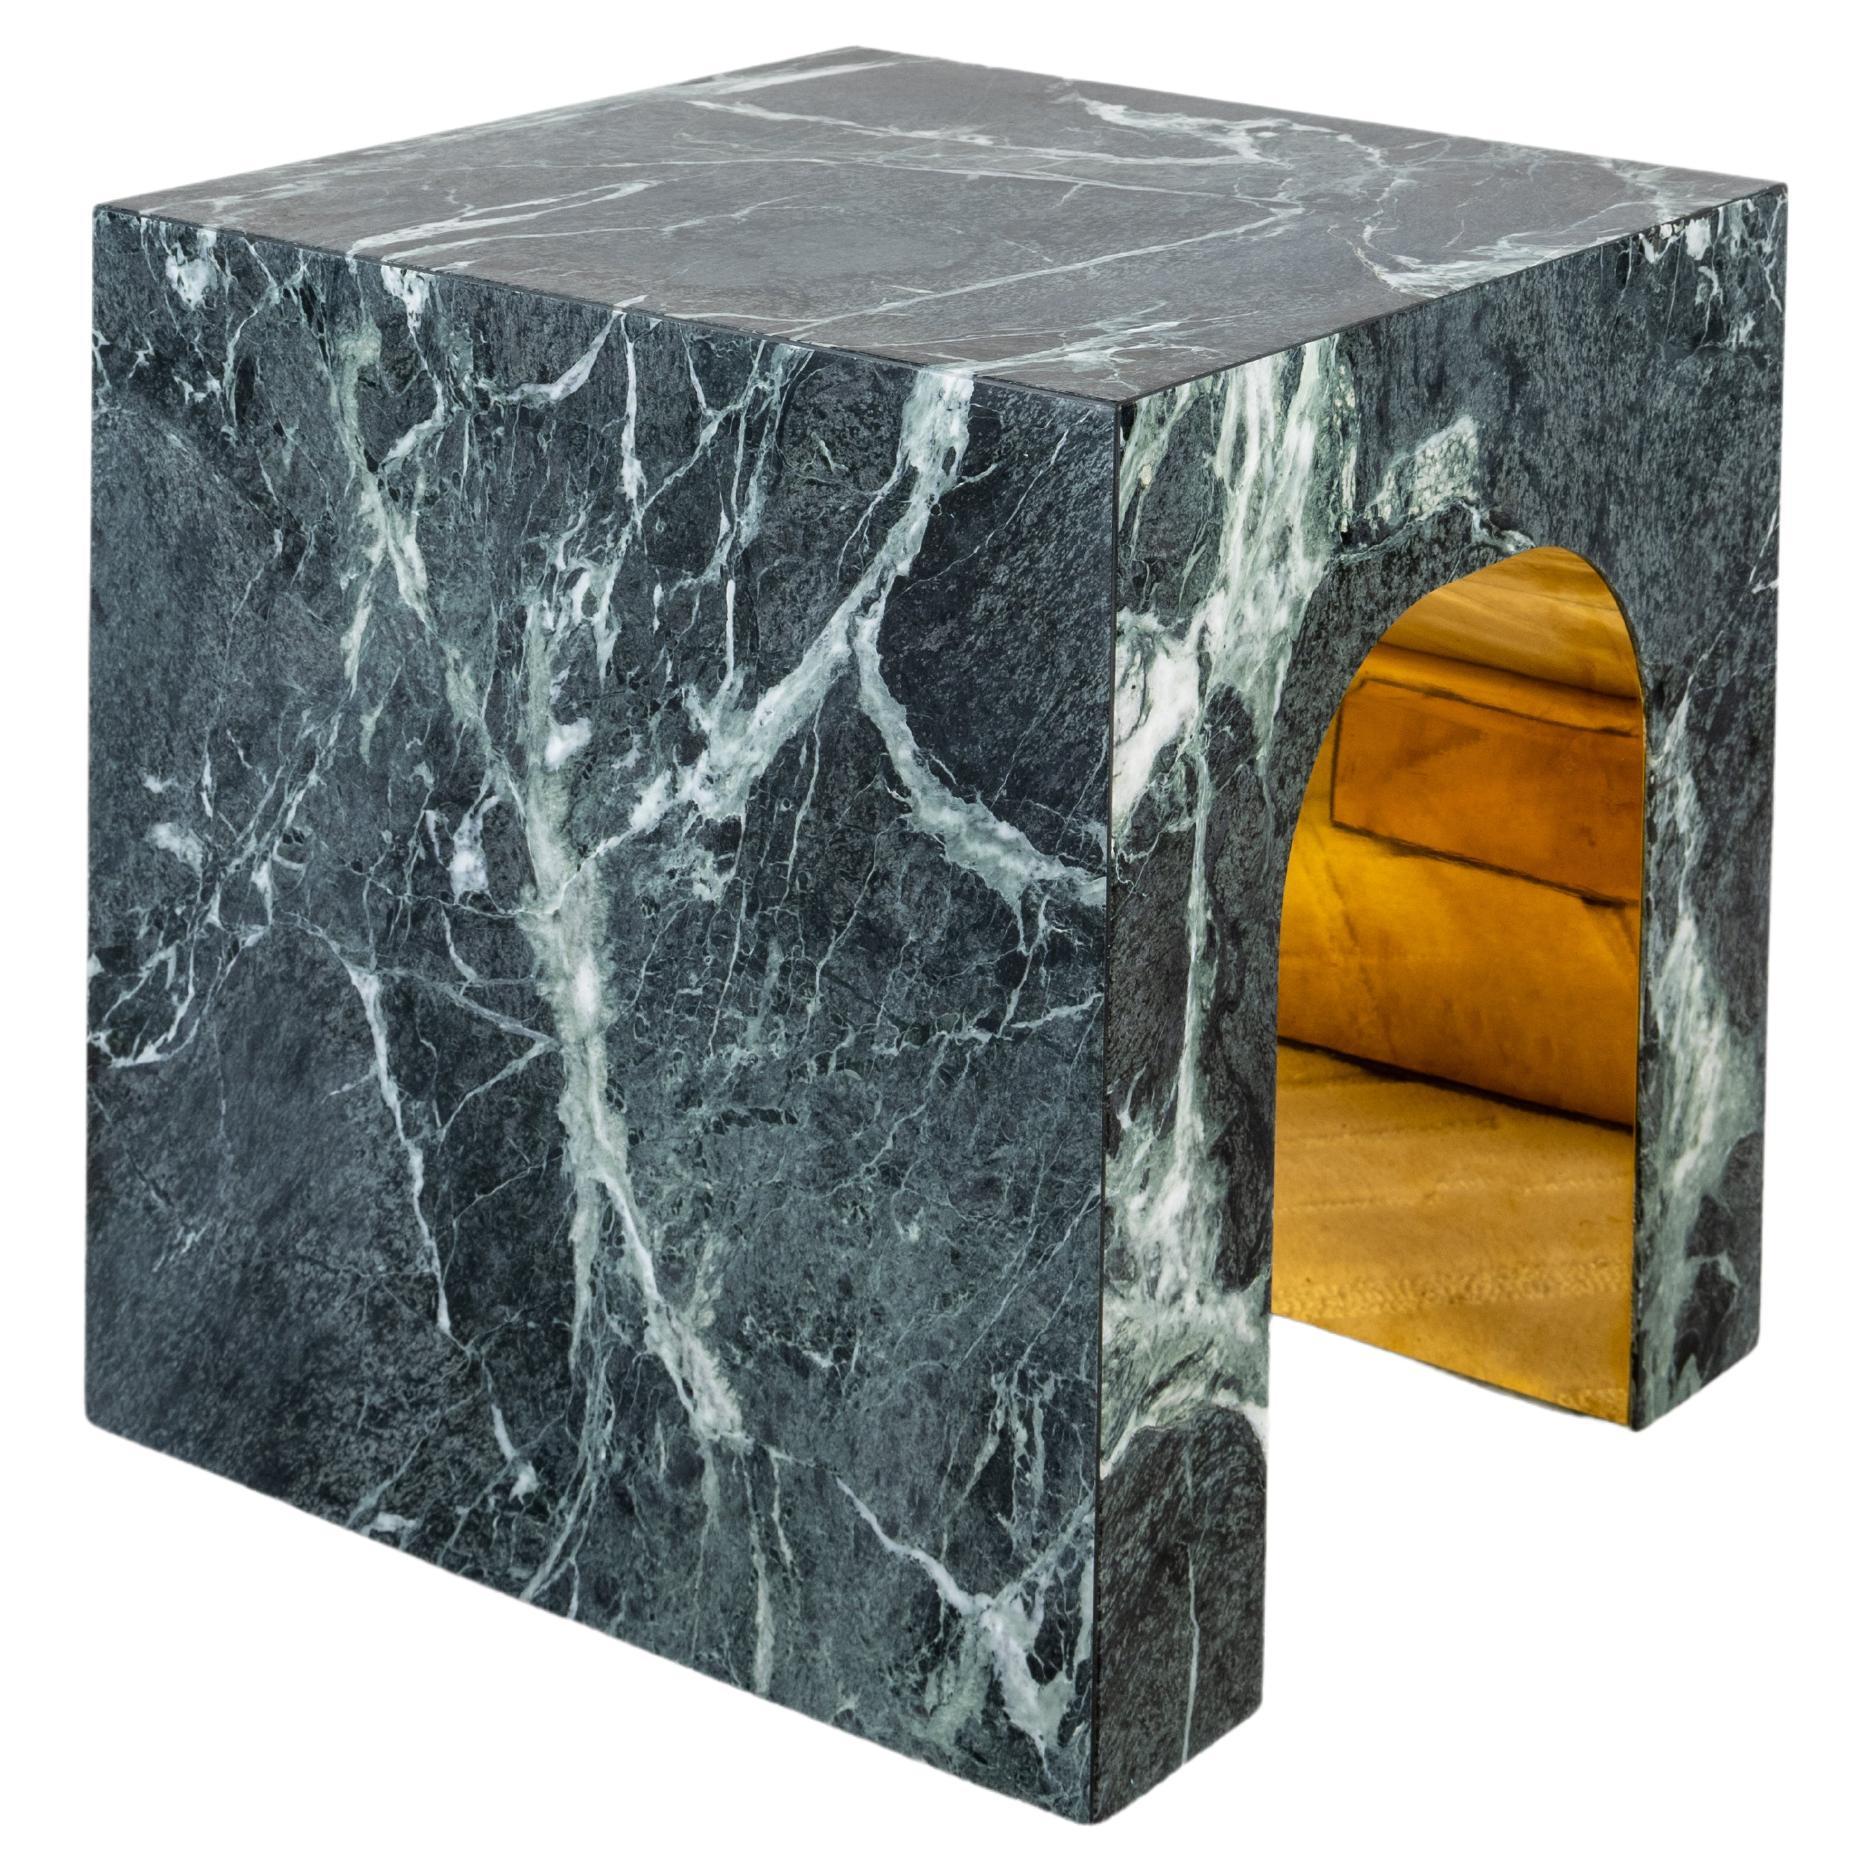 NU - Table basse en marbre et laiton, faite à la main